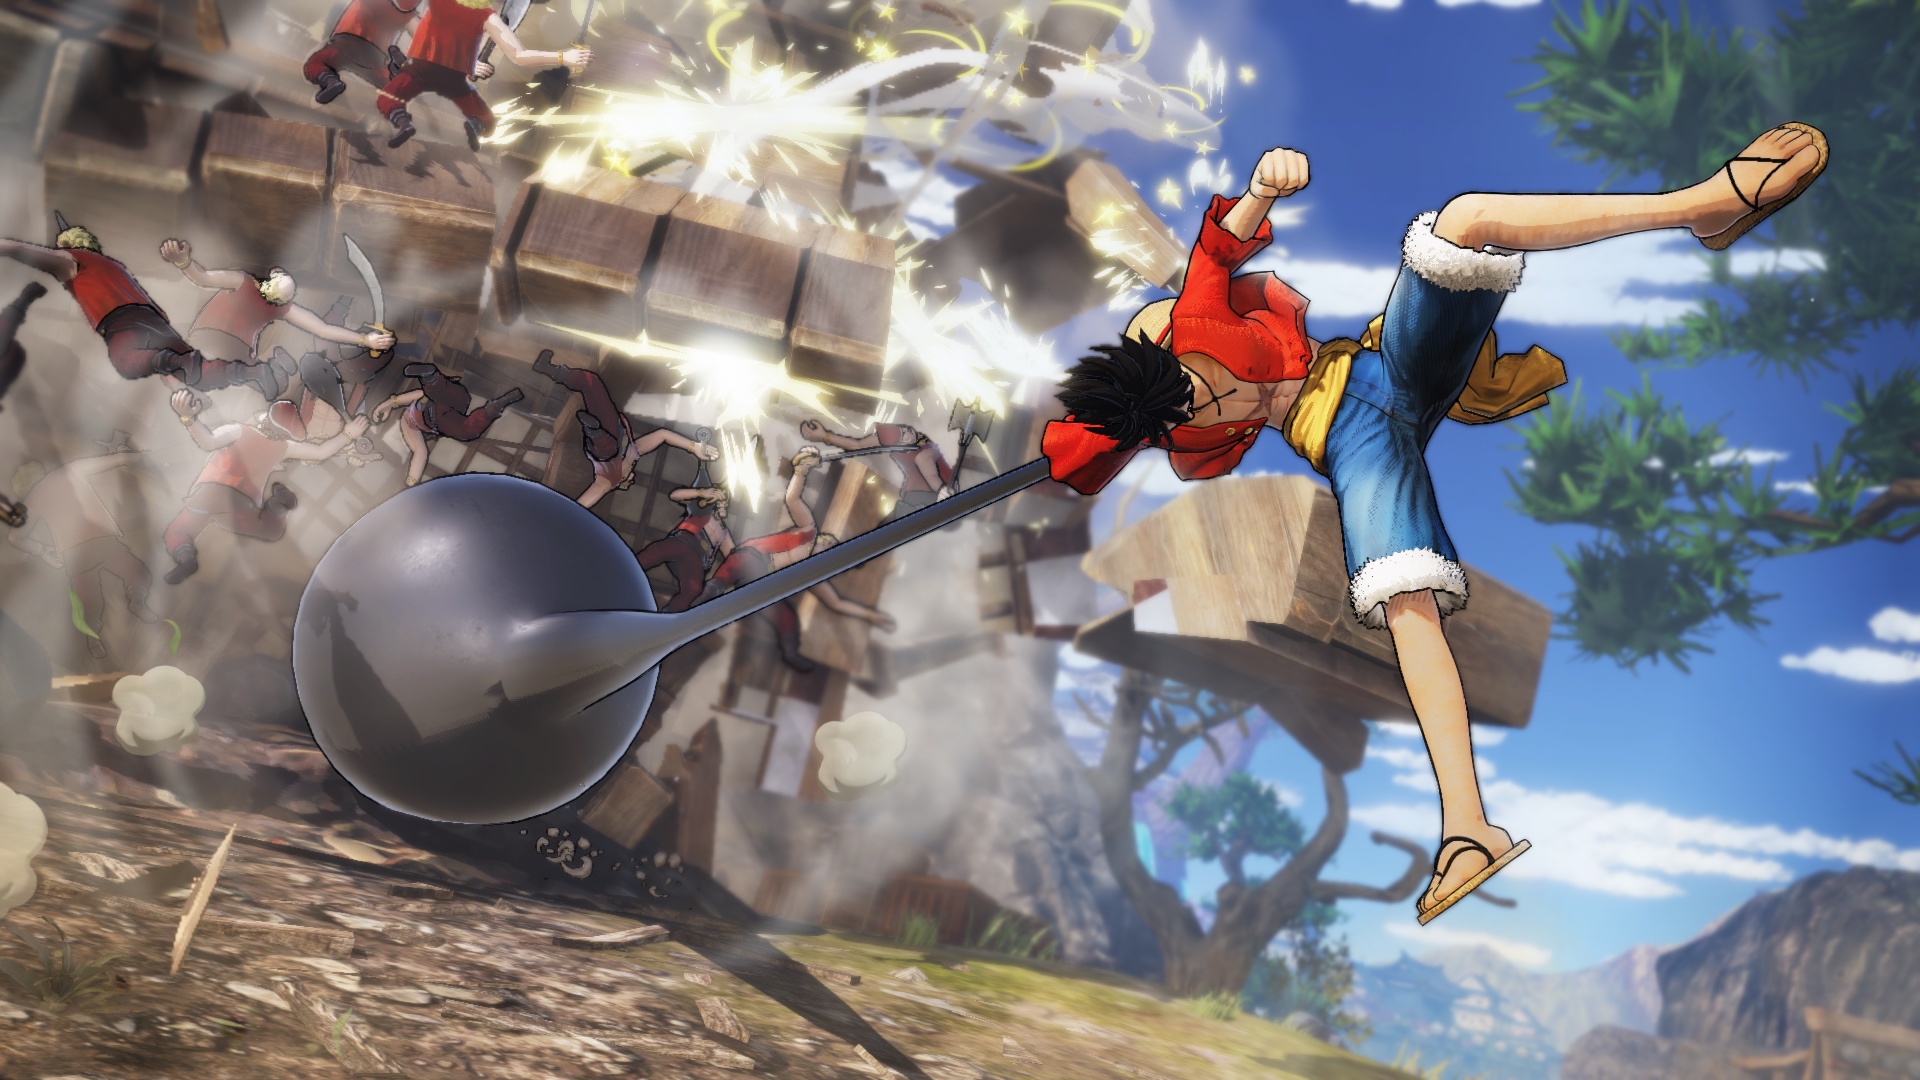 فروش بازی One Piece: Pirate Warriors 4 از مرز ۲ میلیون نسخه گذشت